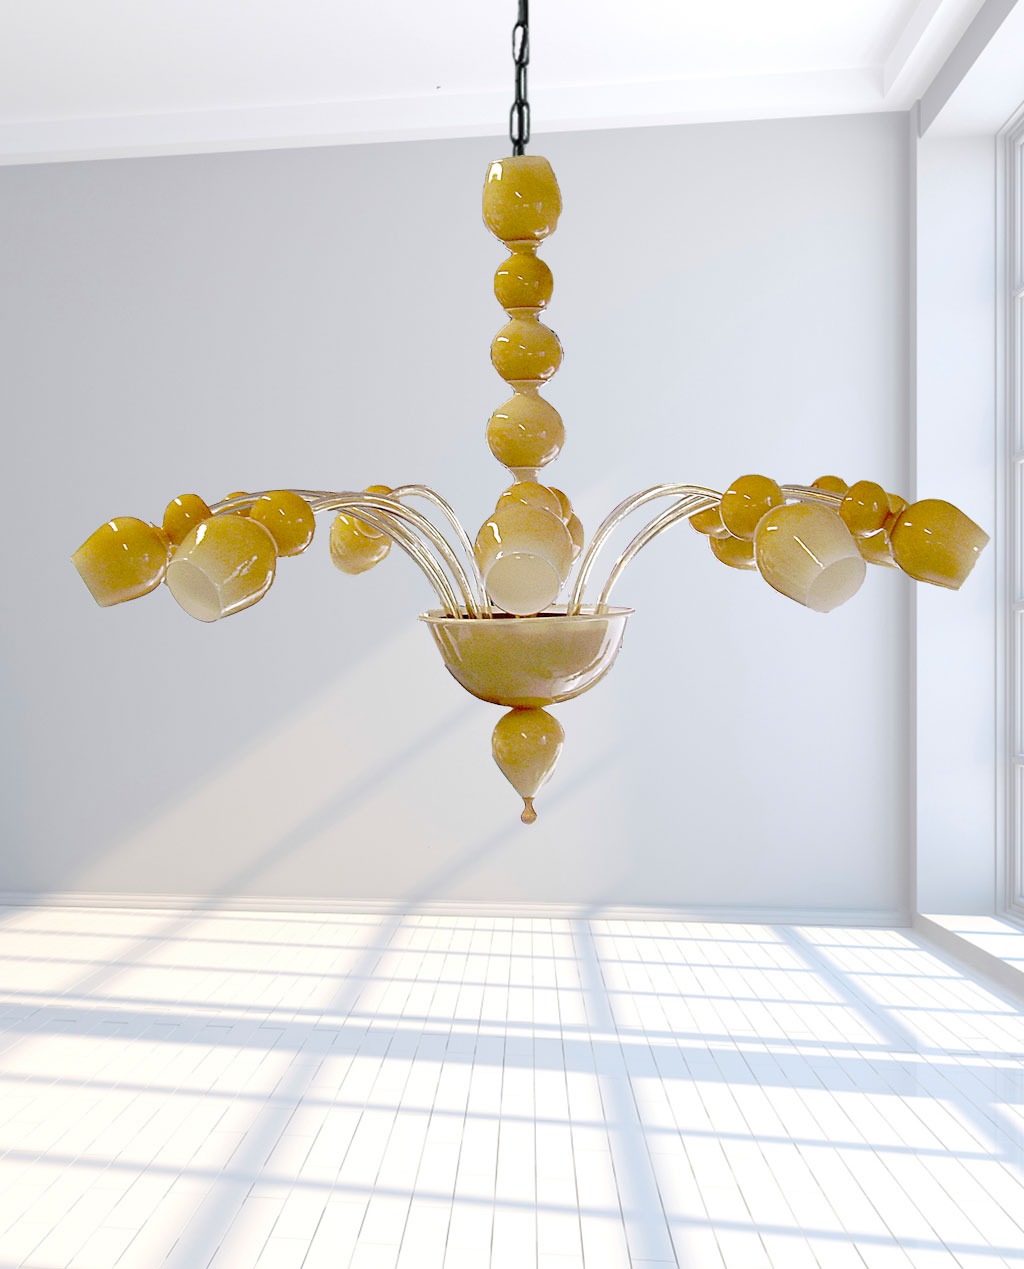 Bottega Veneziana | Lampadario Murano moderno modello TRON in vetro soffiato bianco e amb